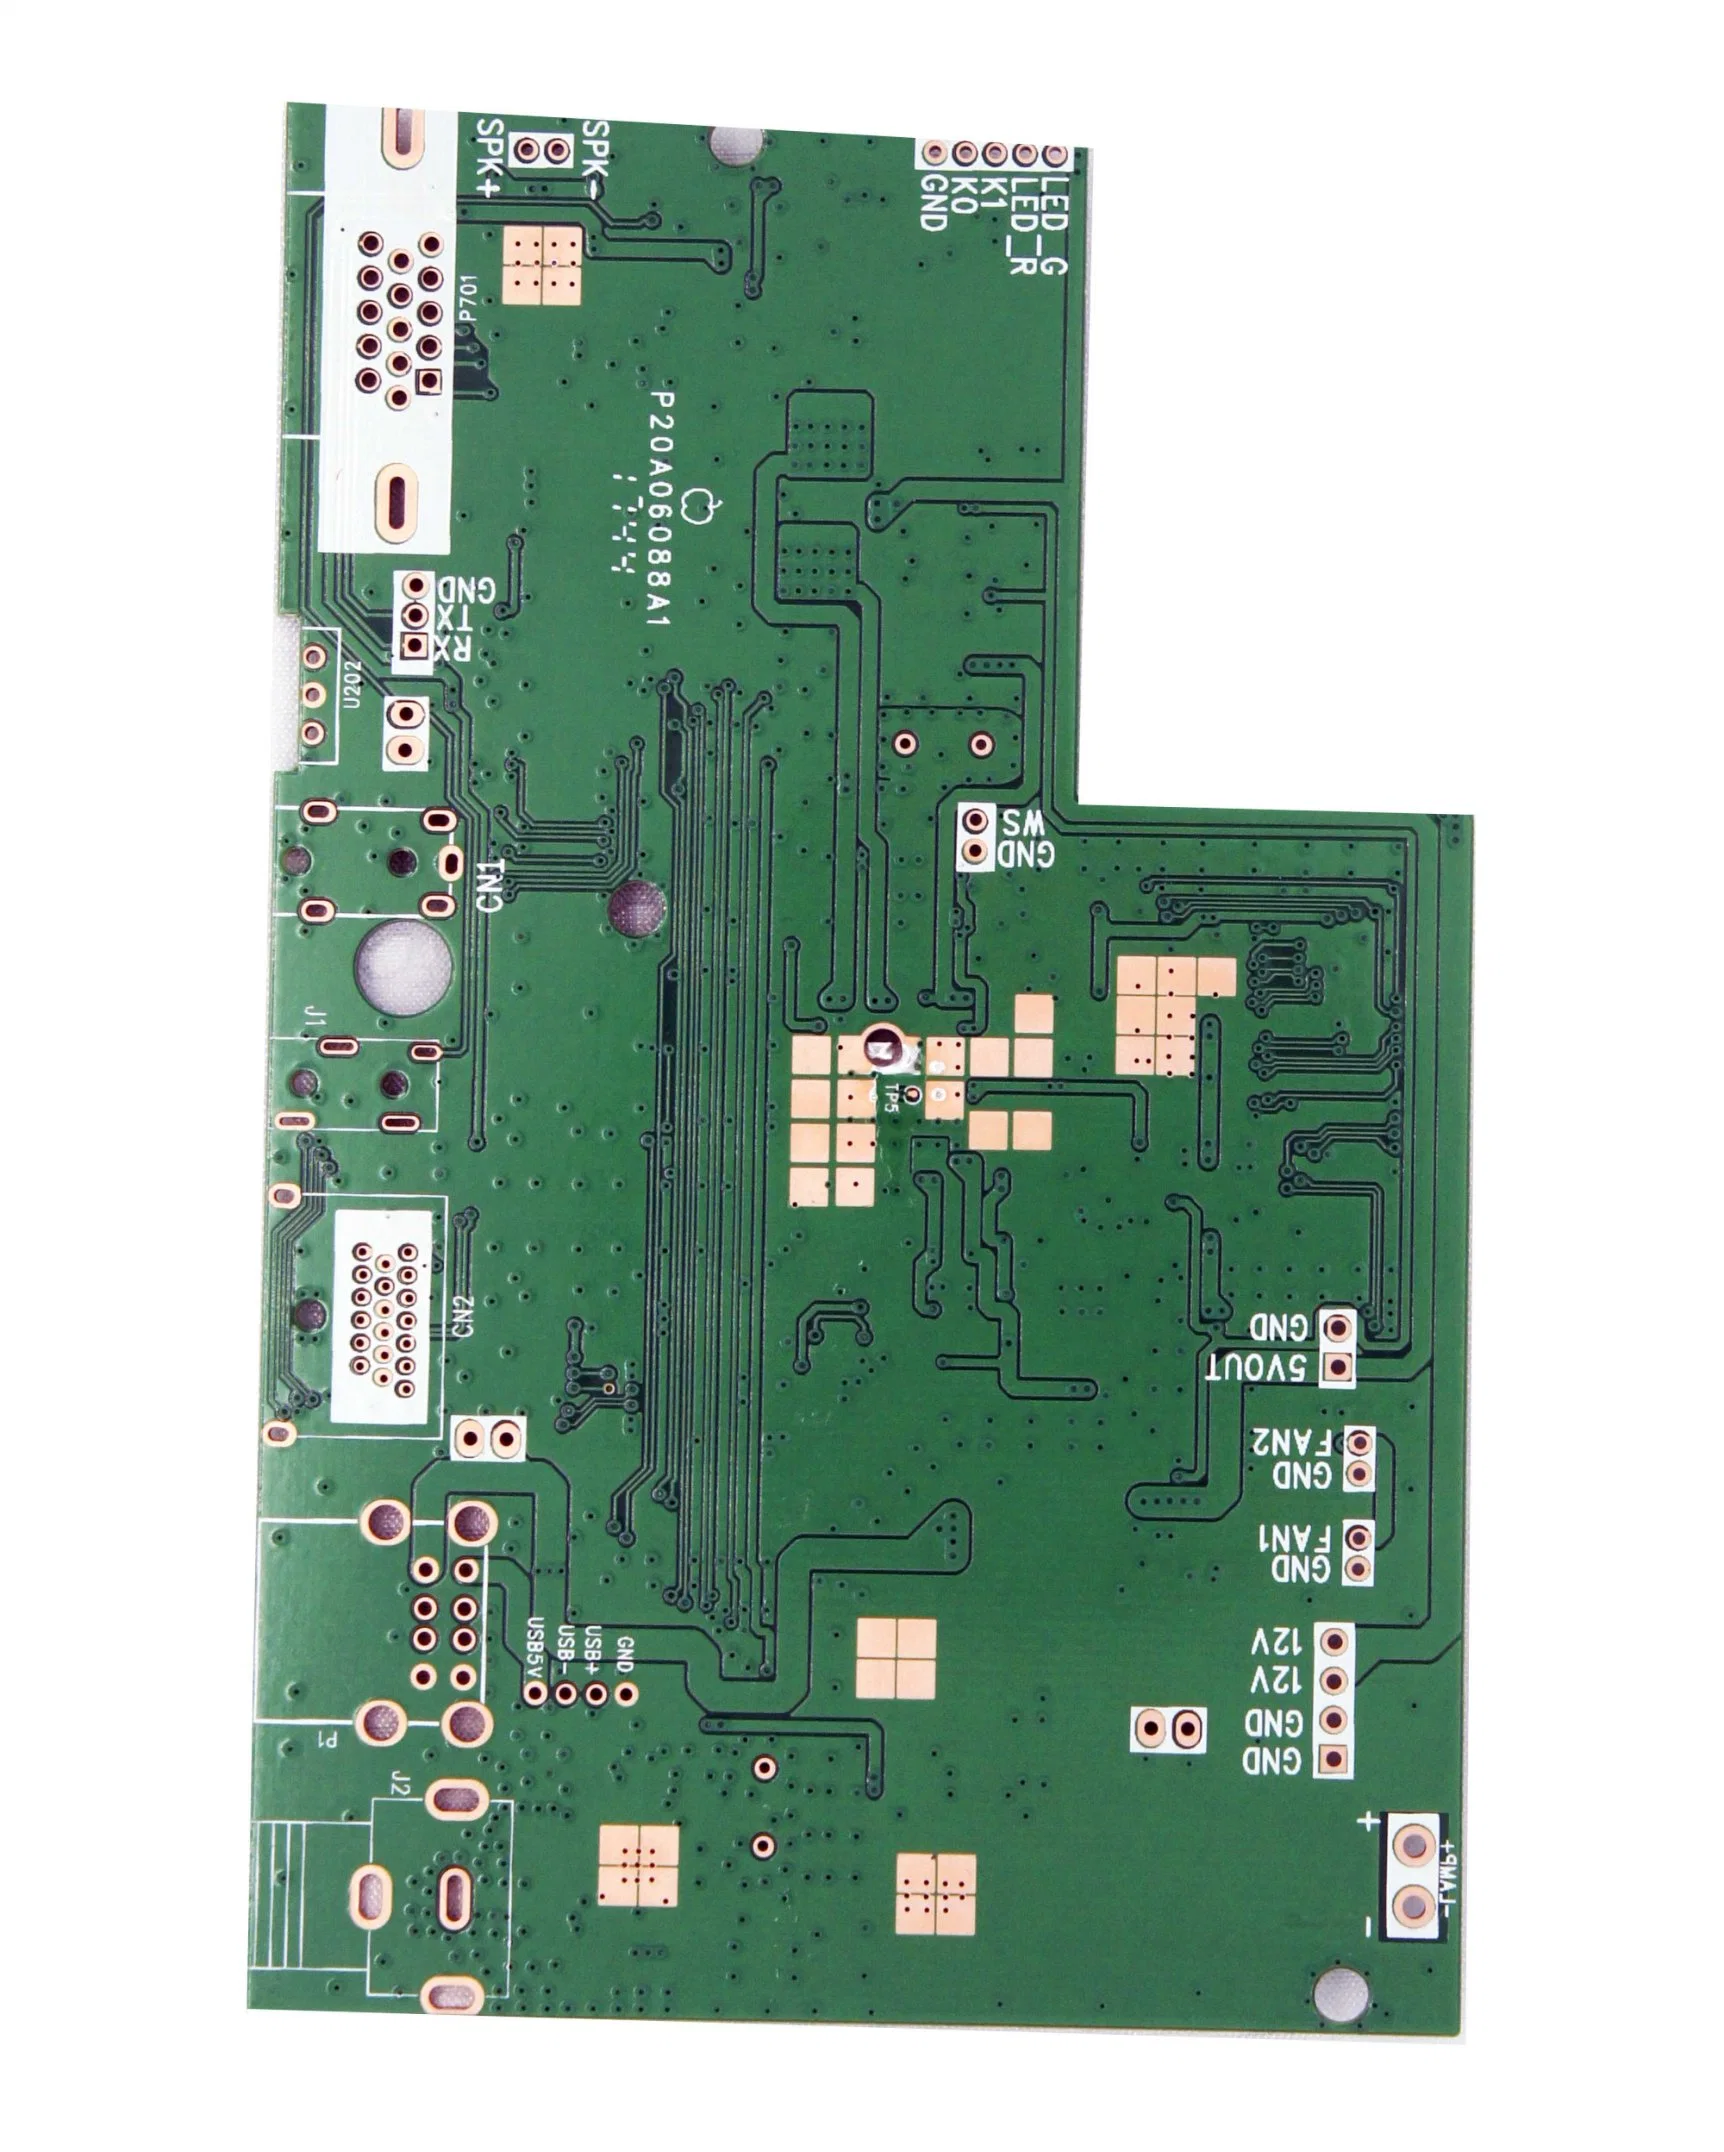 خدمة OEM لوحة الدوائر الخزفية، لوحة الدوائر الكهربائية Cem-1، لوحة الدائرة PCB، الجهة المصنعة للوحة الدائرة المطبوعة (PCB)